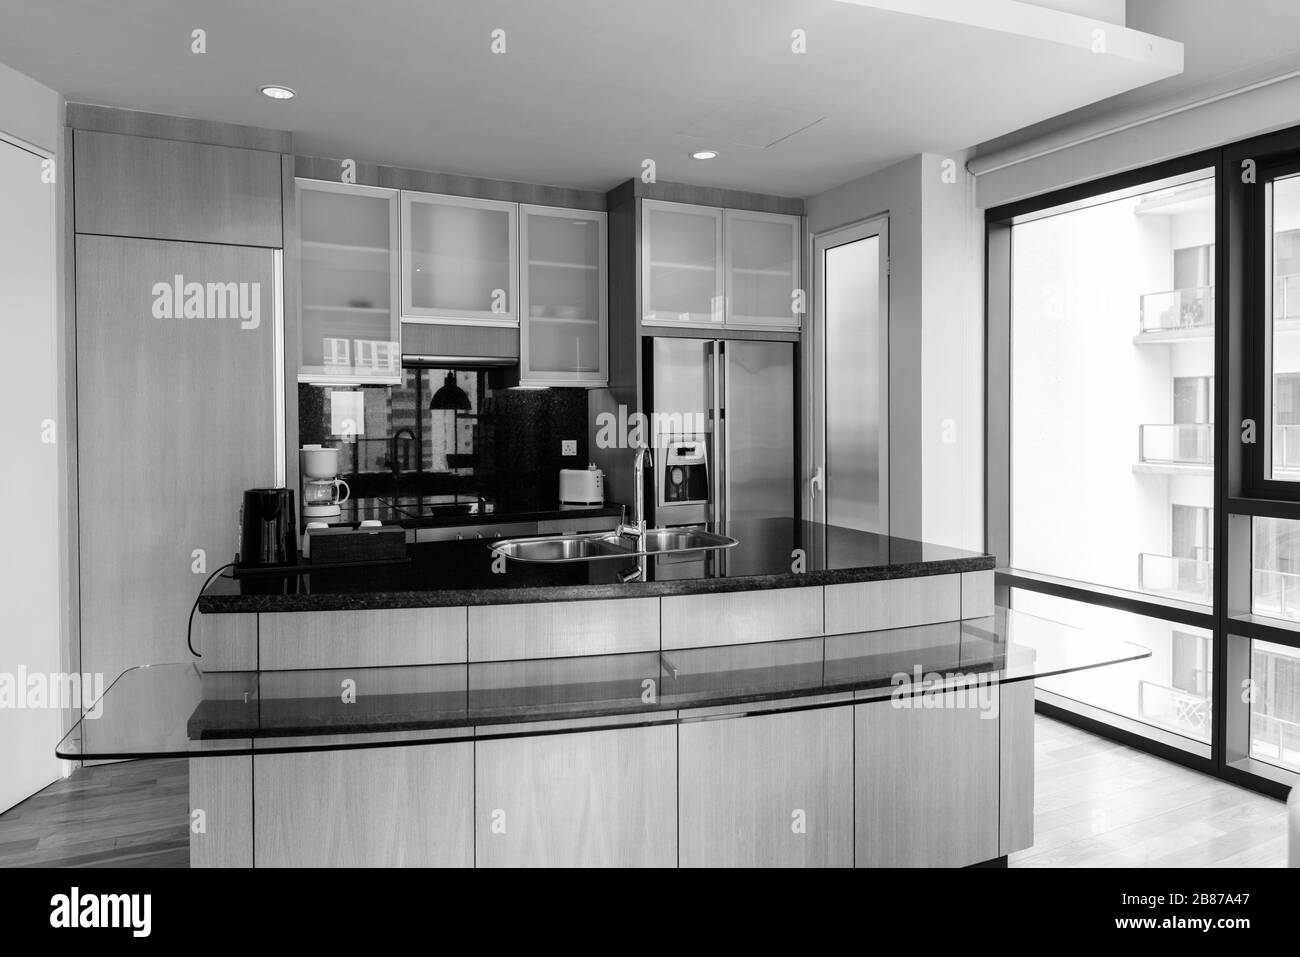 Lussuosa cucina moderna in legno e pulita con piano in vetro contro la finestra illuminata dal sole Foto Stock